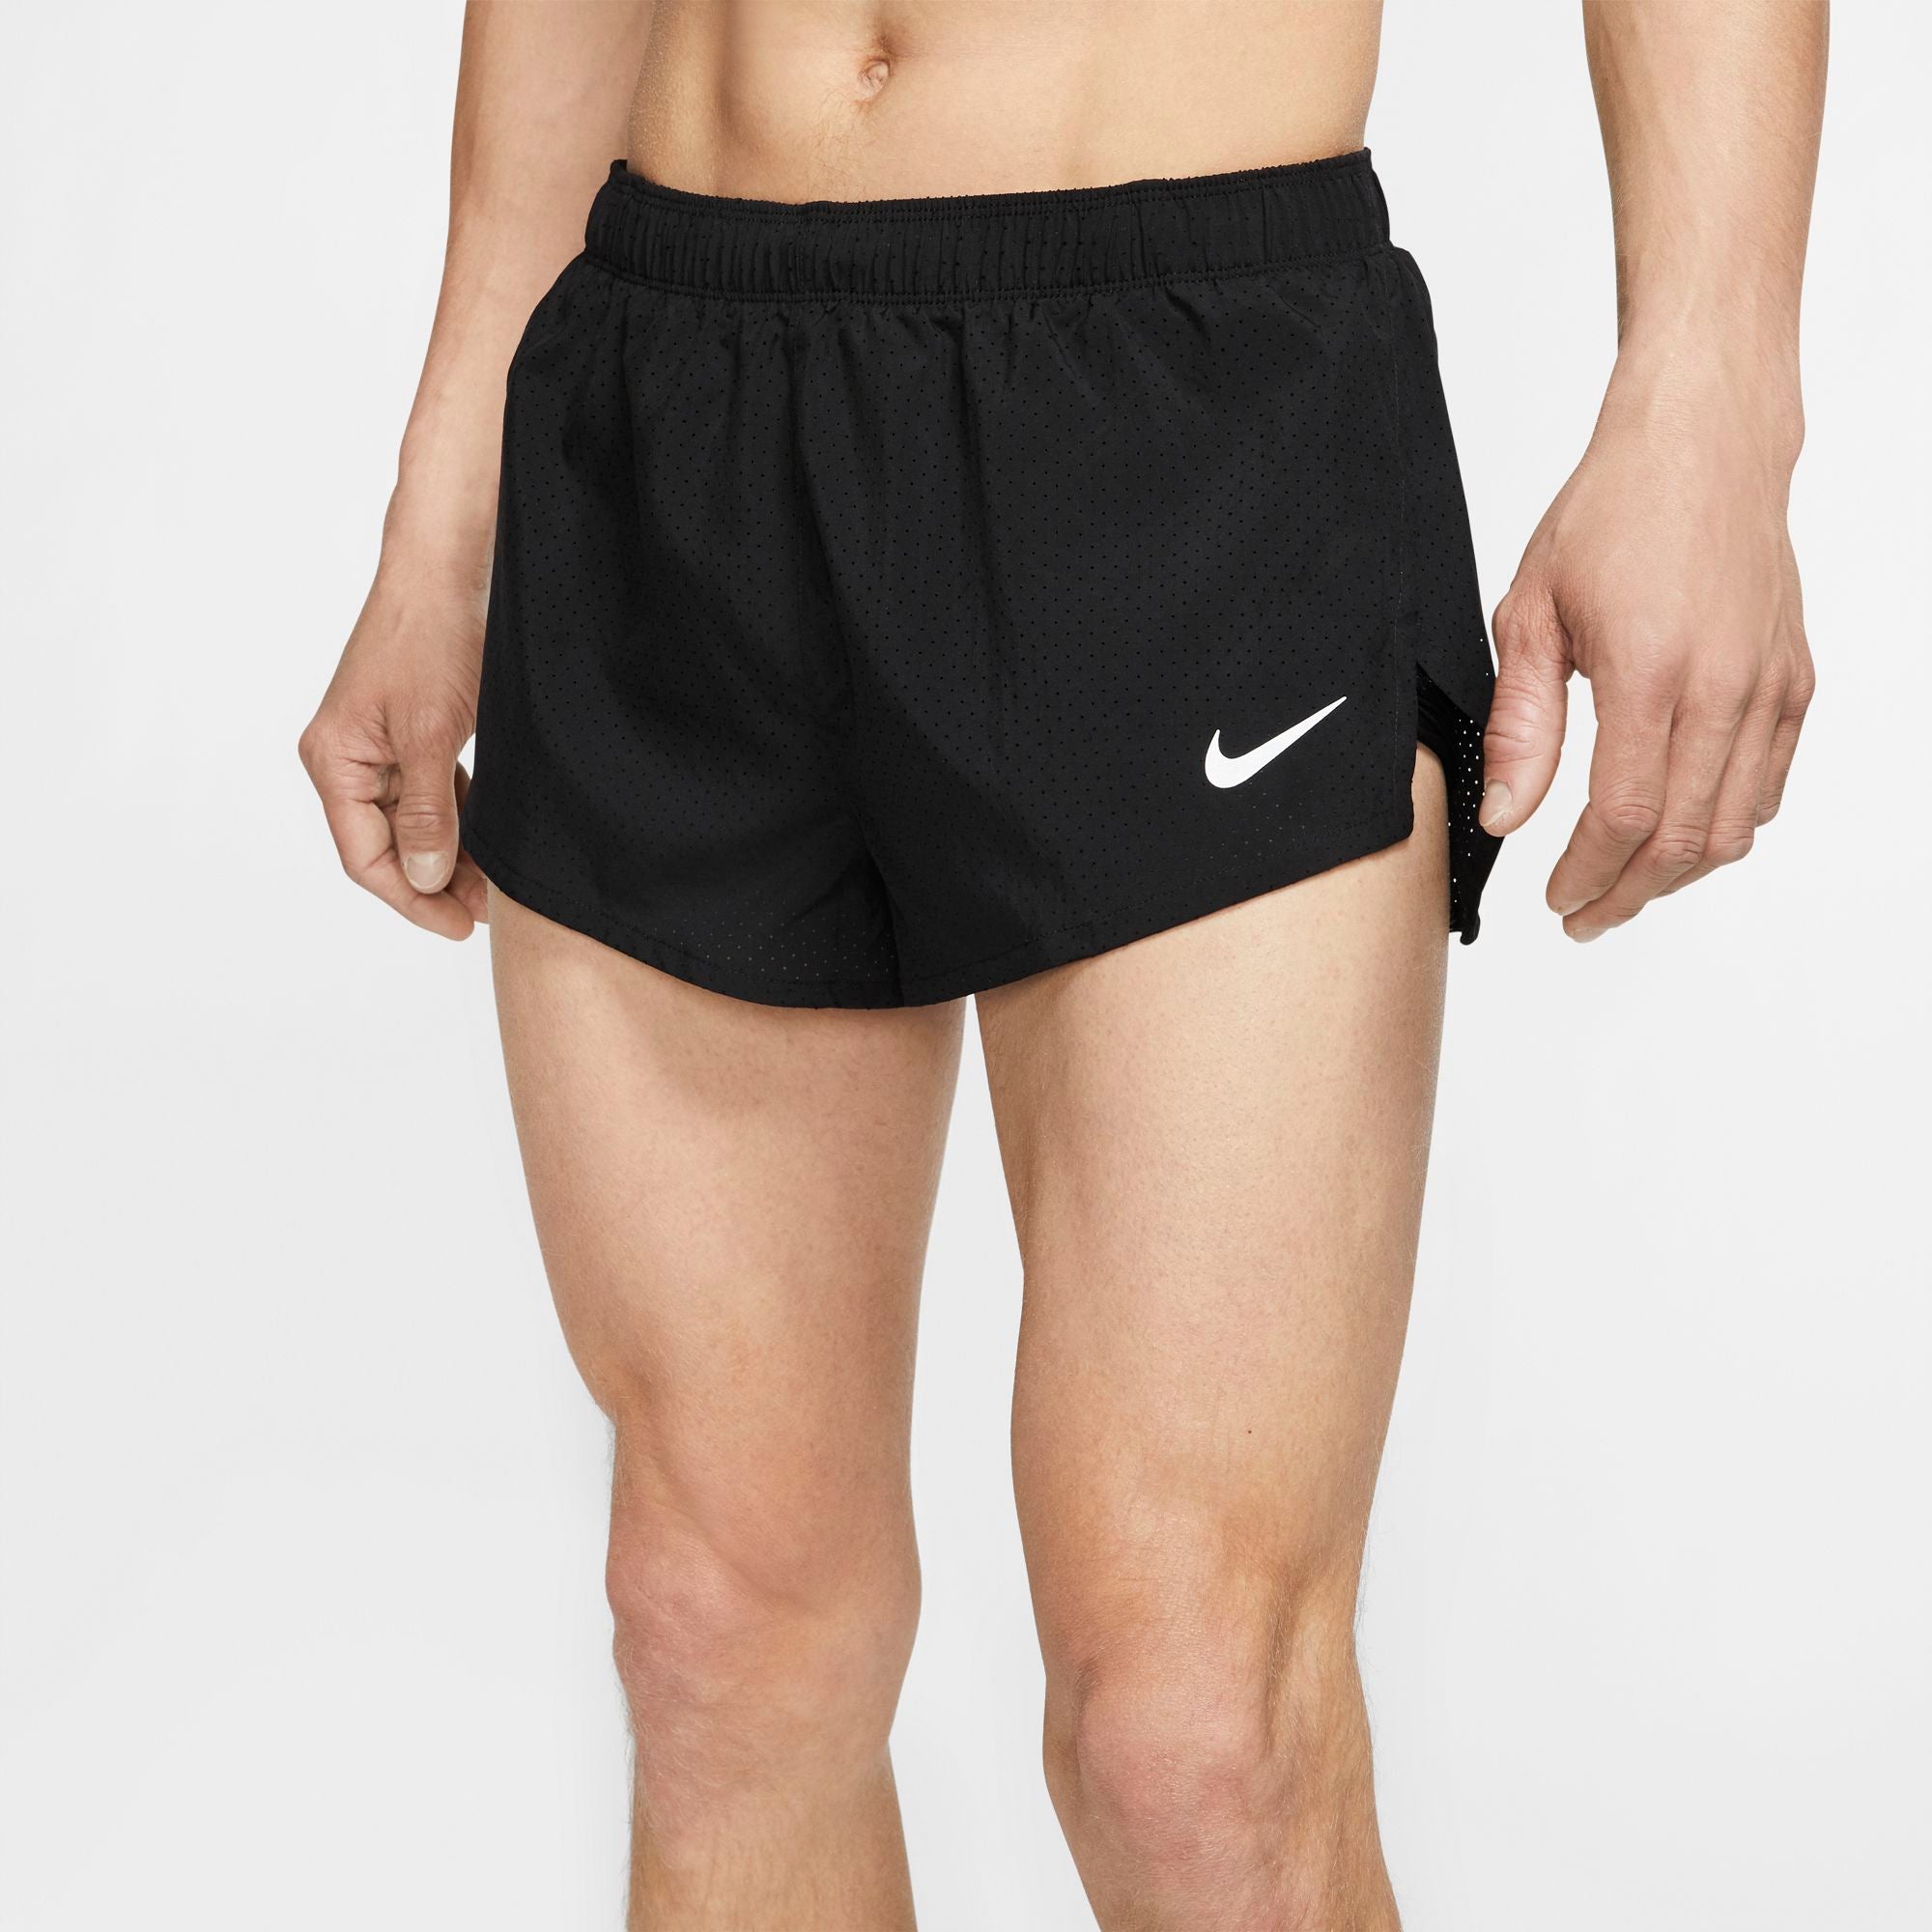 nike 2 inch running shorts